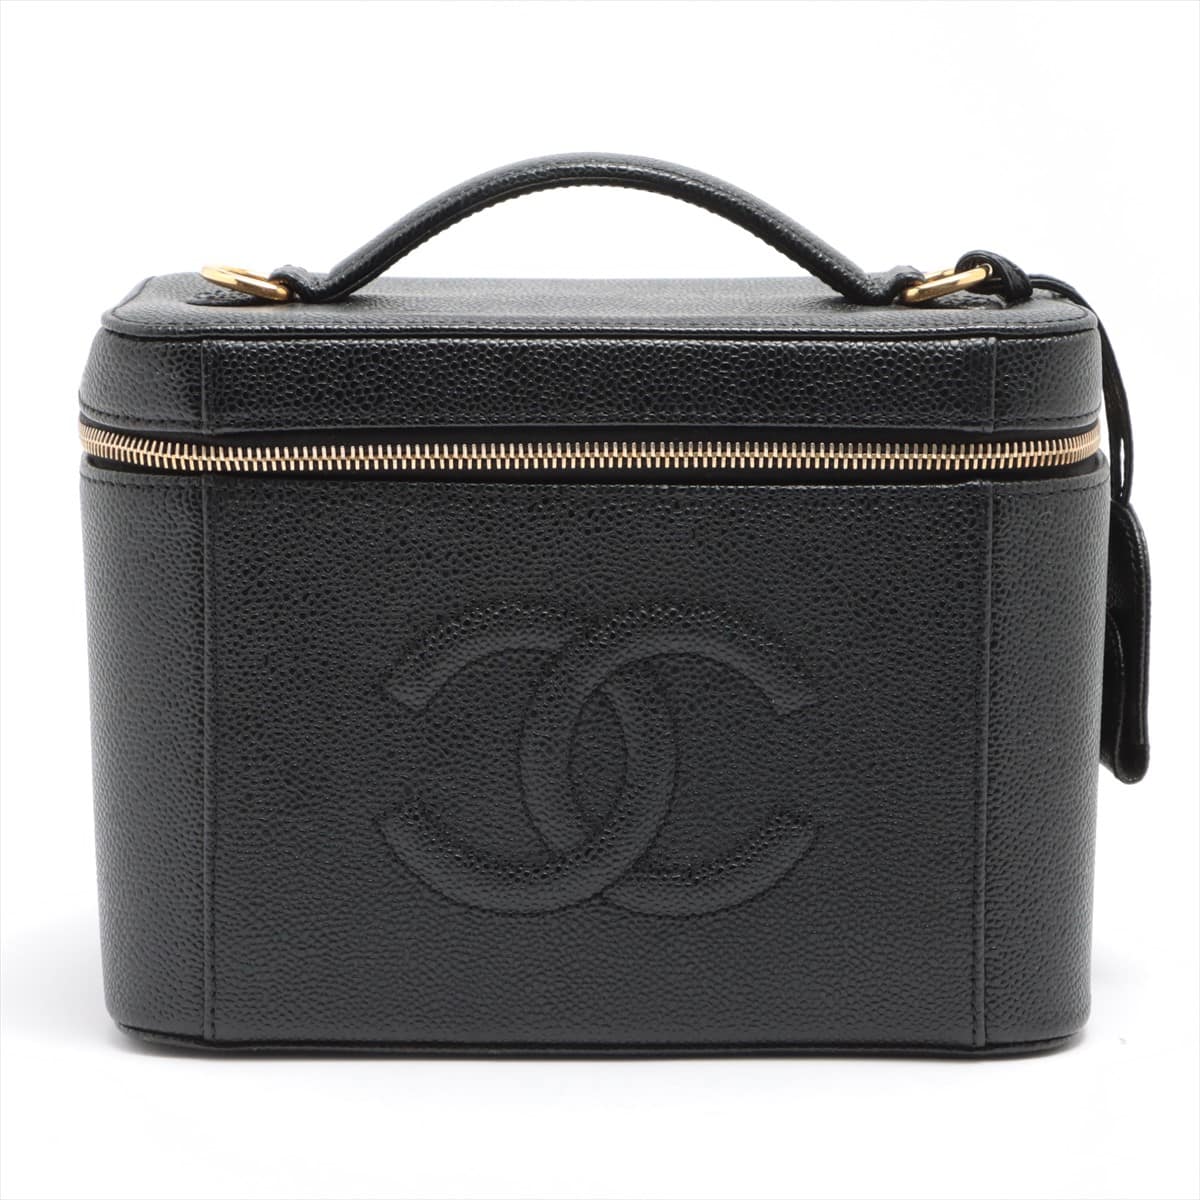 Chanel Coco Mark Caviarskin Vanity bag 2WAY Black Gold Metal fittings 5XXXXXX